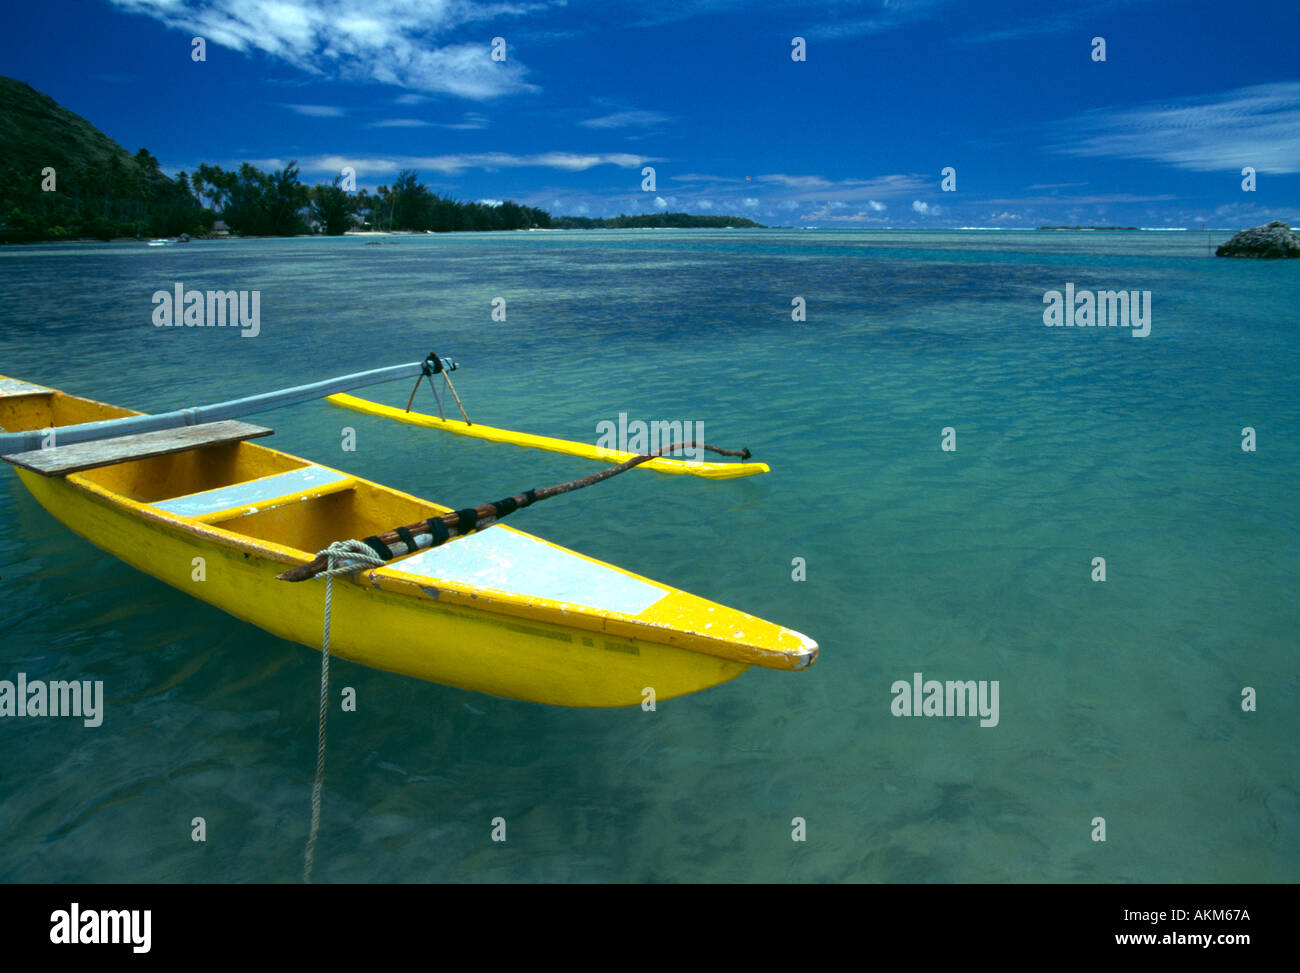 Moorea Polynésie Française pirogue jaune flotte dans un ciel bleu avec de l'eau verte Banque D'Images